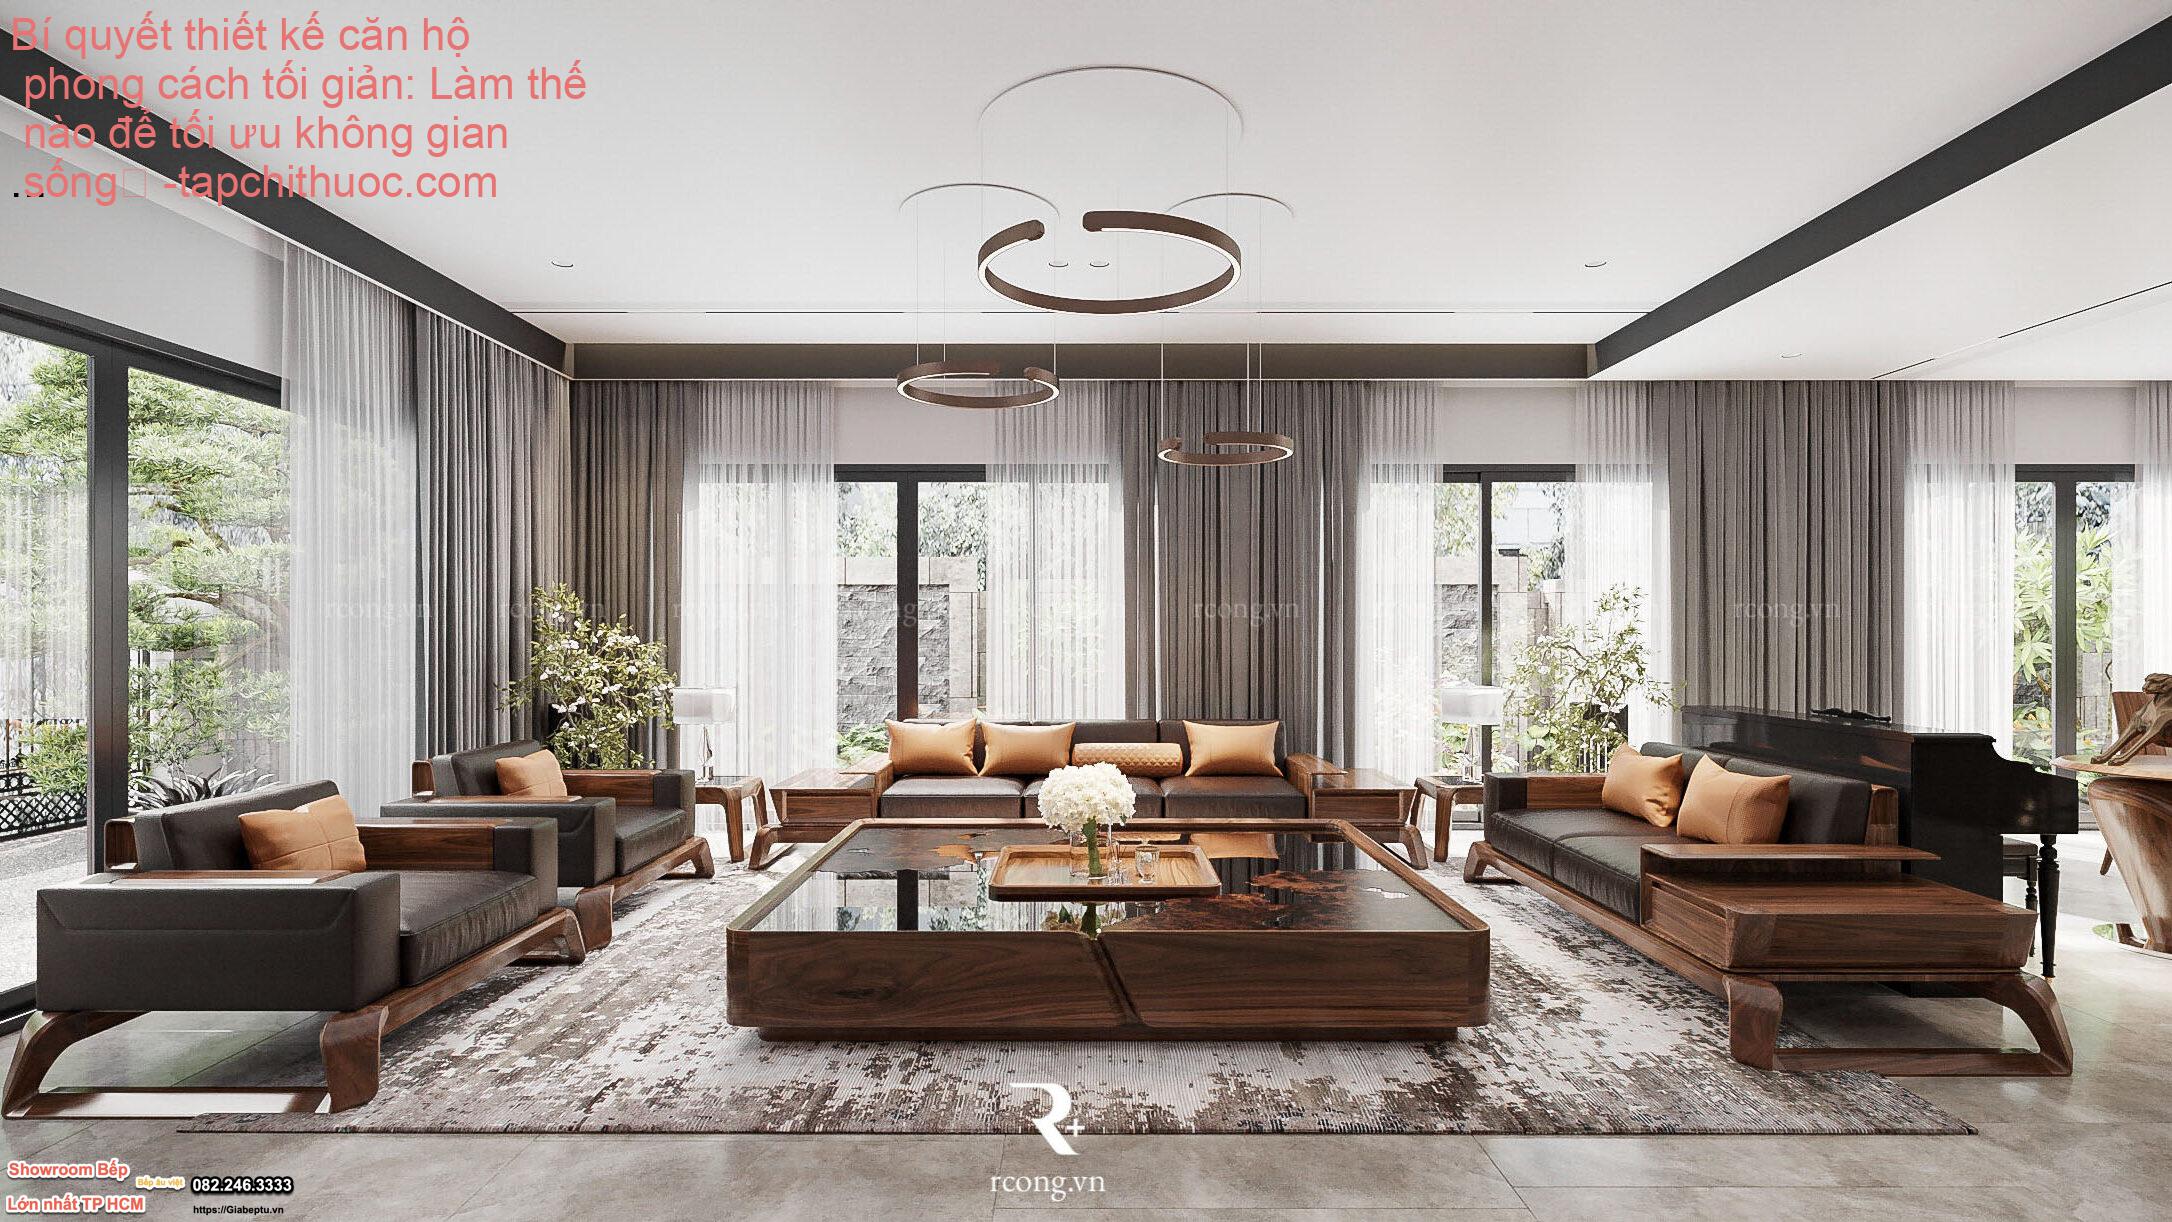 Bí quyết thiết kế căn hộ phong cách tối giản: Làm thế nào để tối ưu không gian sống
